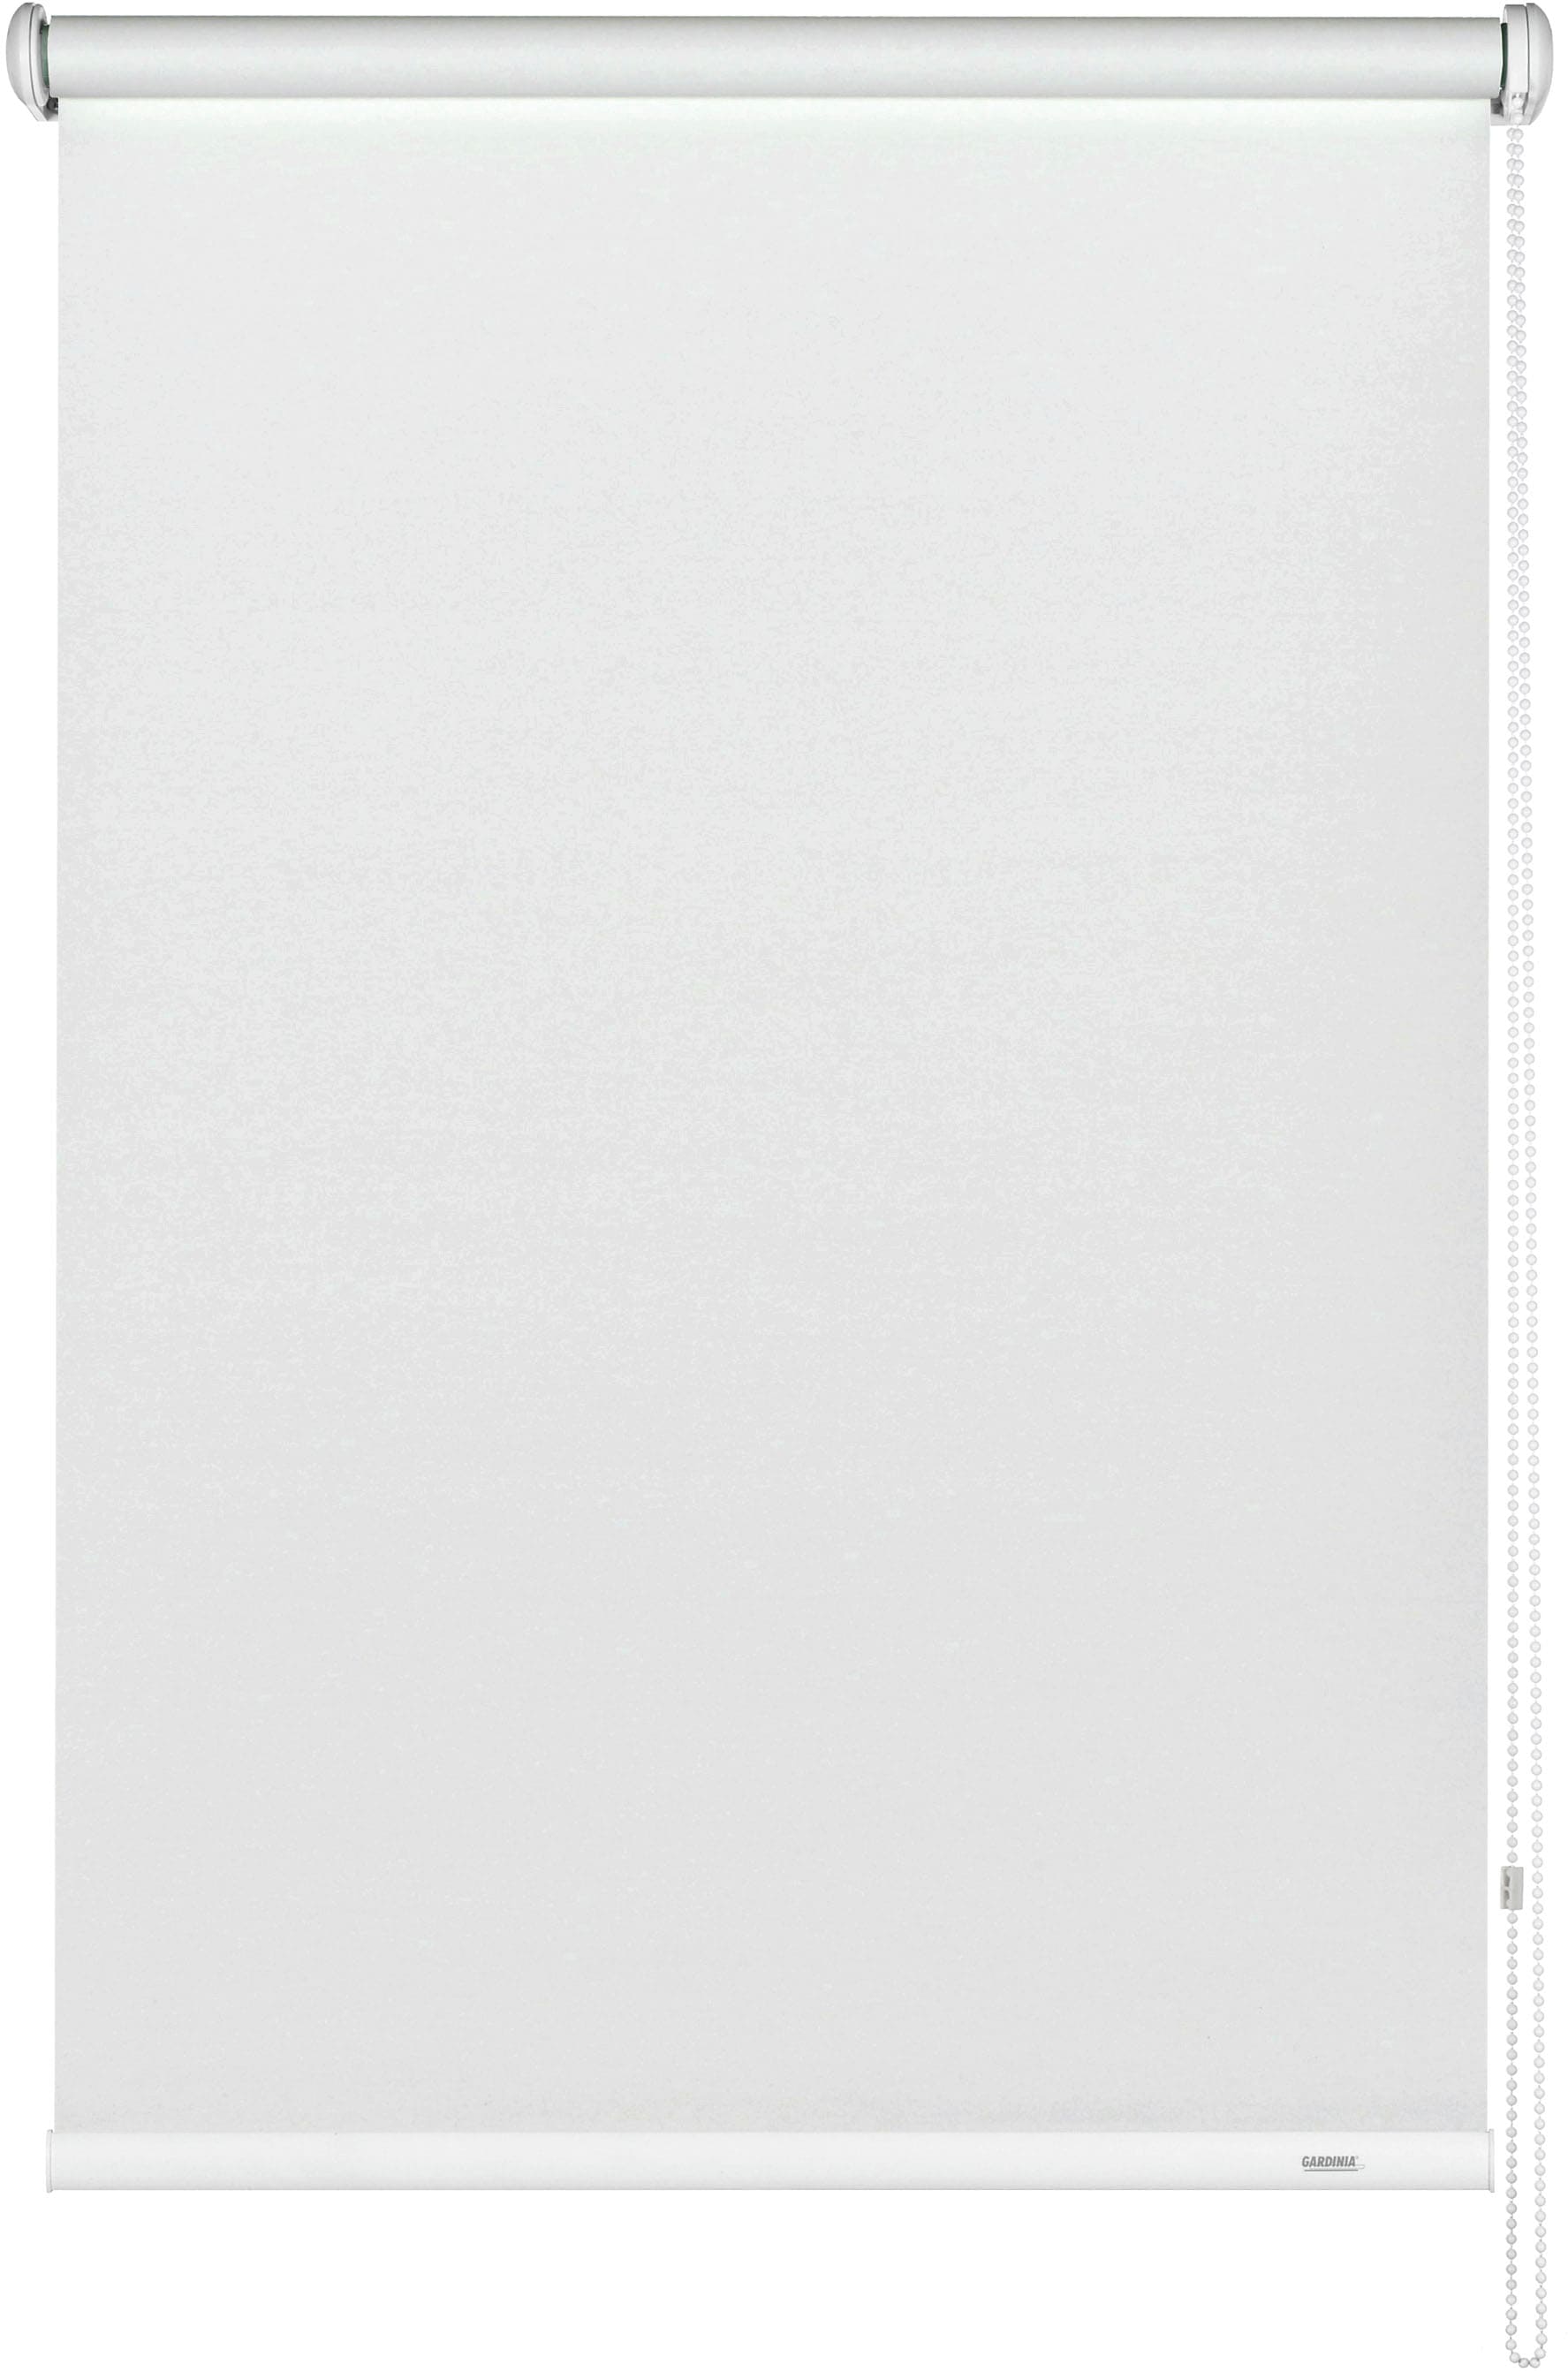 GARDINIA Seitenzugrollo »Uni-Rollo Abdunklung«, verdunkelnd, Abschlussprofil in weiß